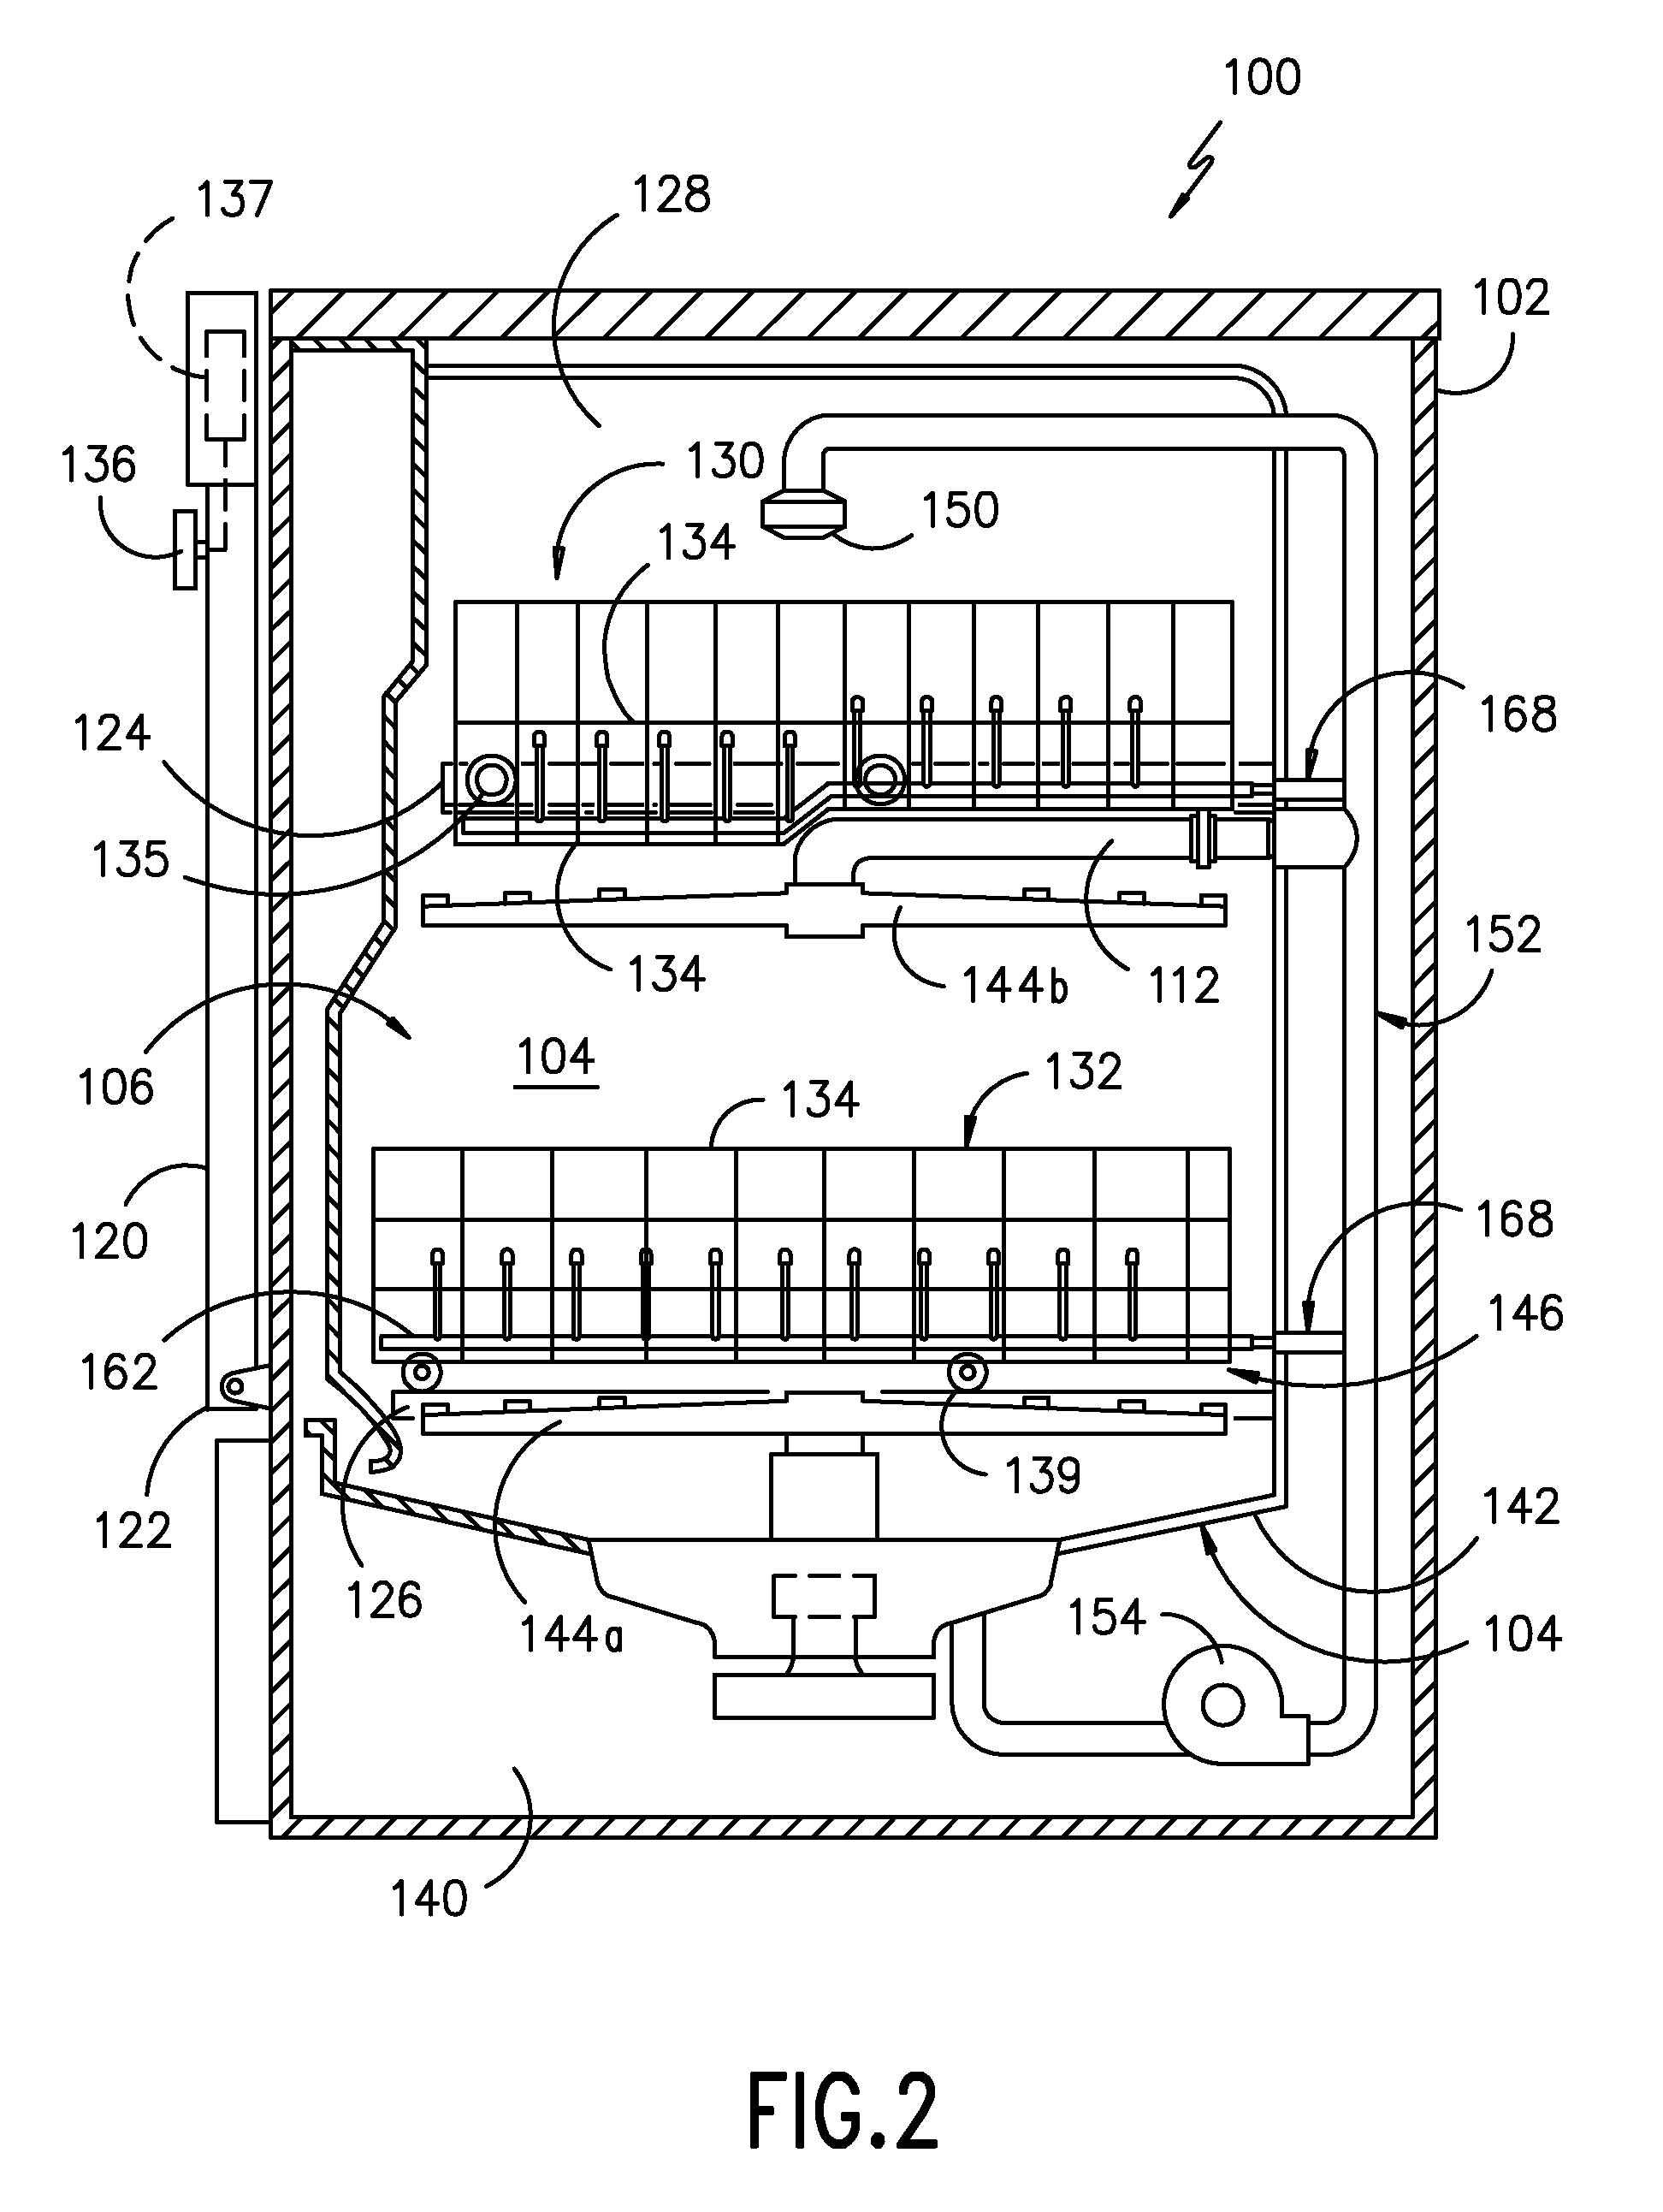 Fluid flow diverter for a dishwasher appliance